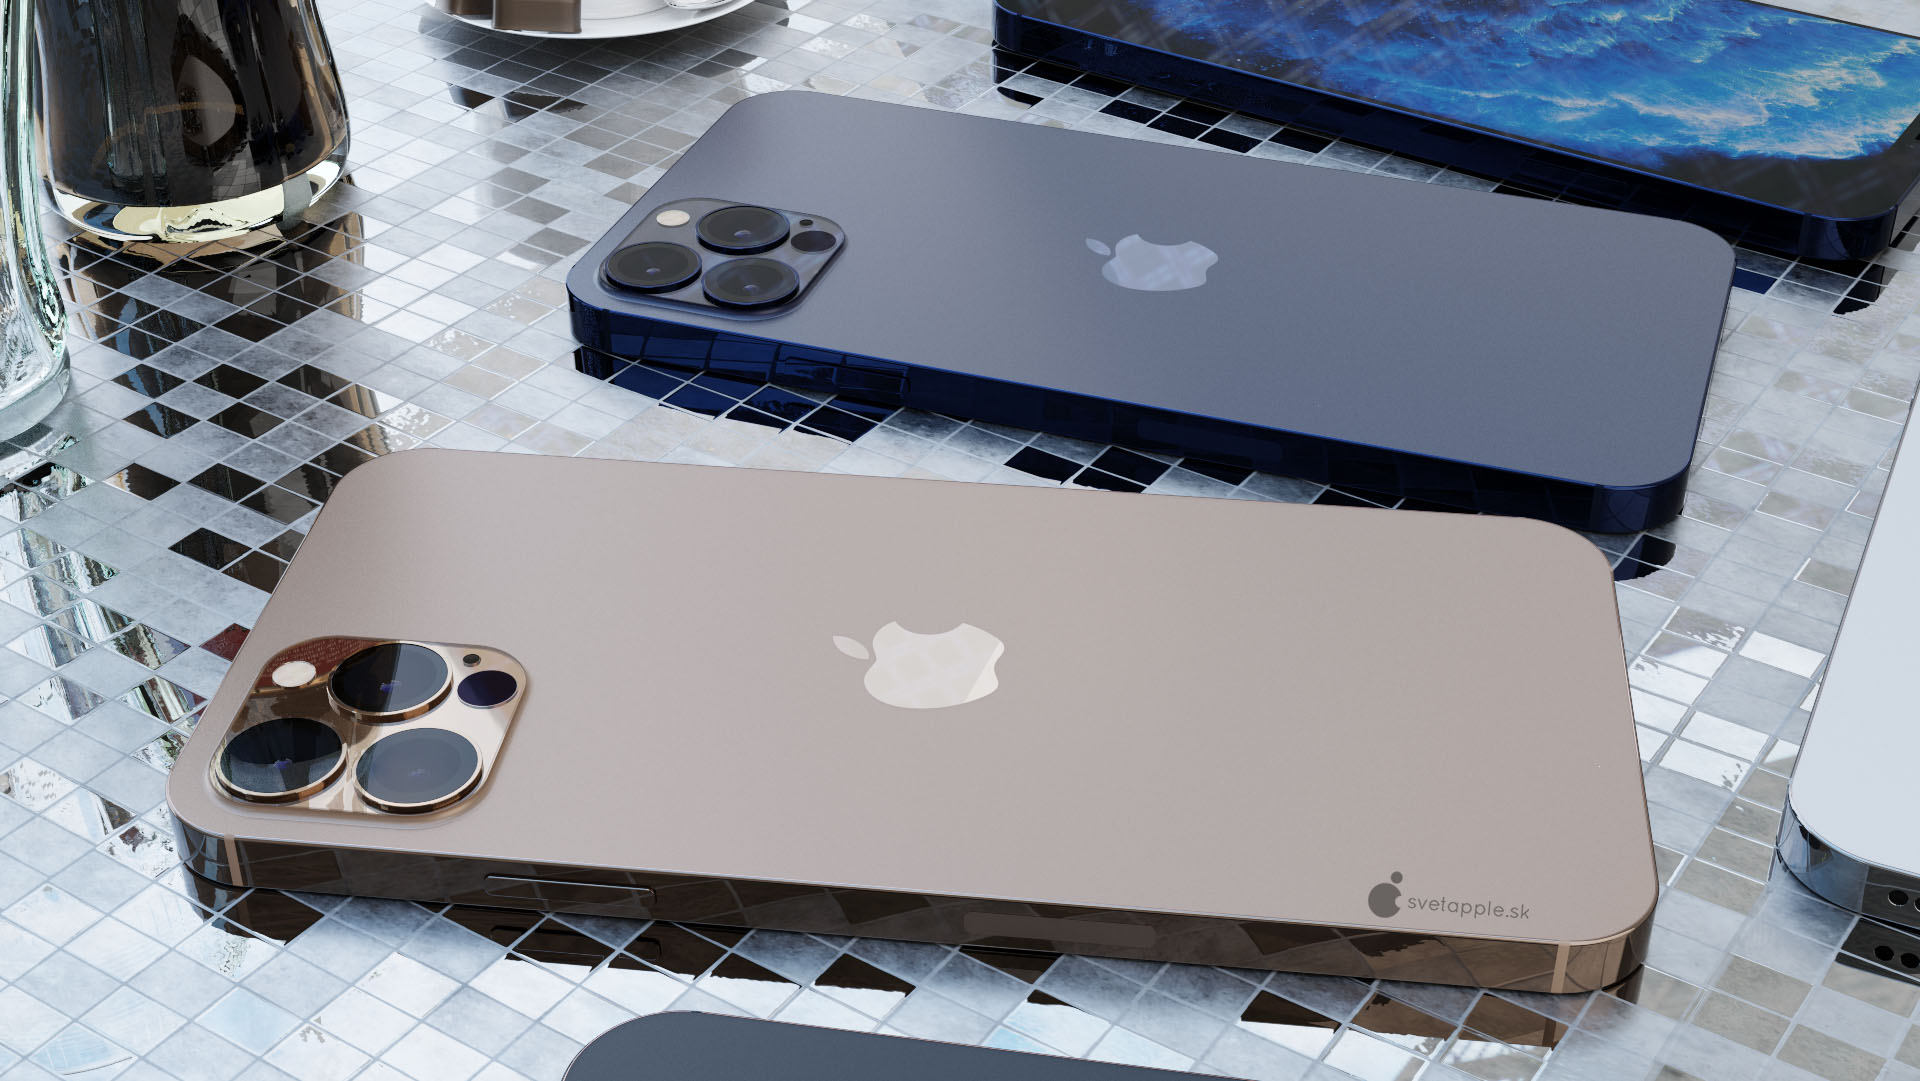 Apple iPhone 12 Pro rendery design kiedy premiera plotki przecieki wycieki